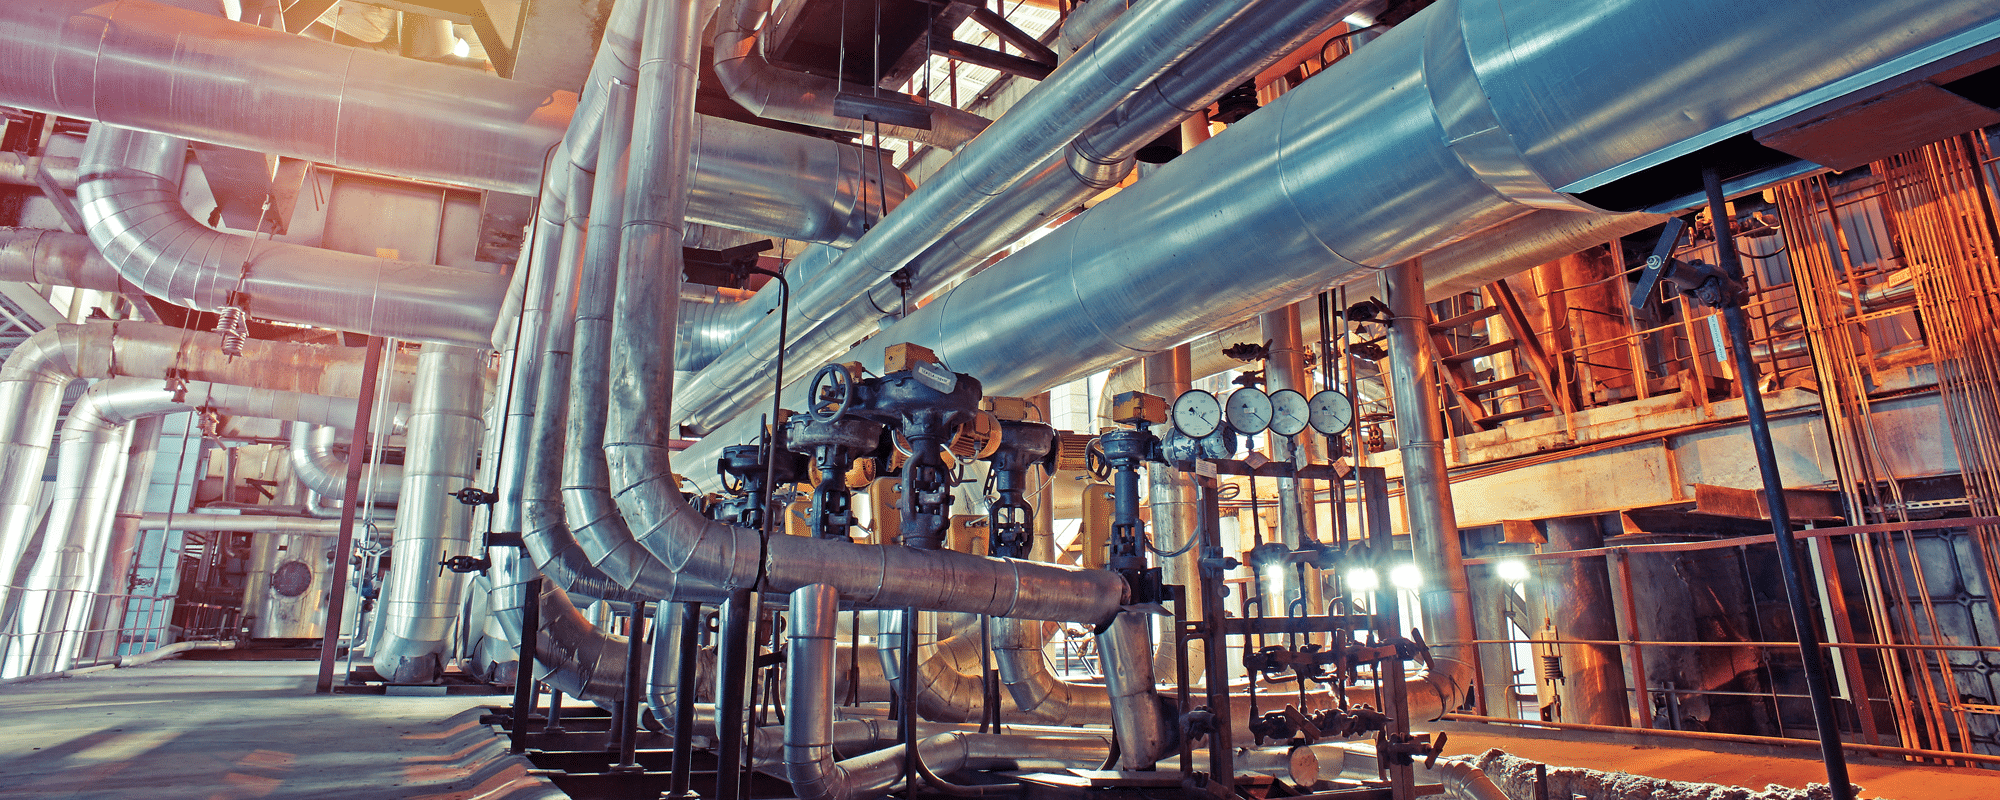 Une usine avec des conduits de vapeur